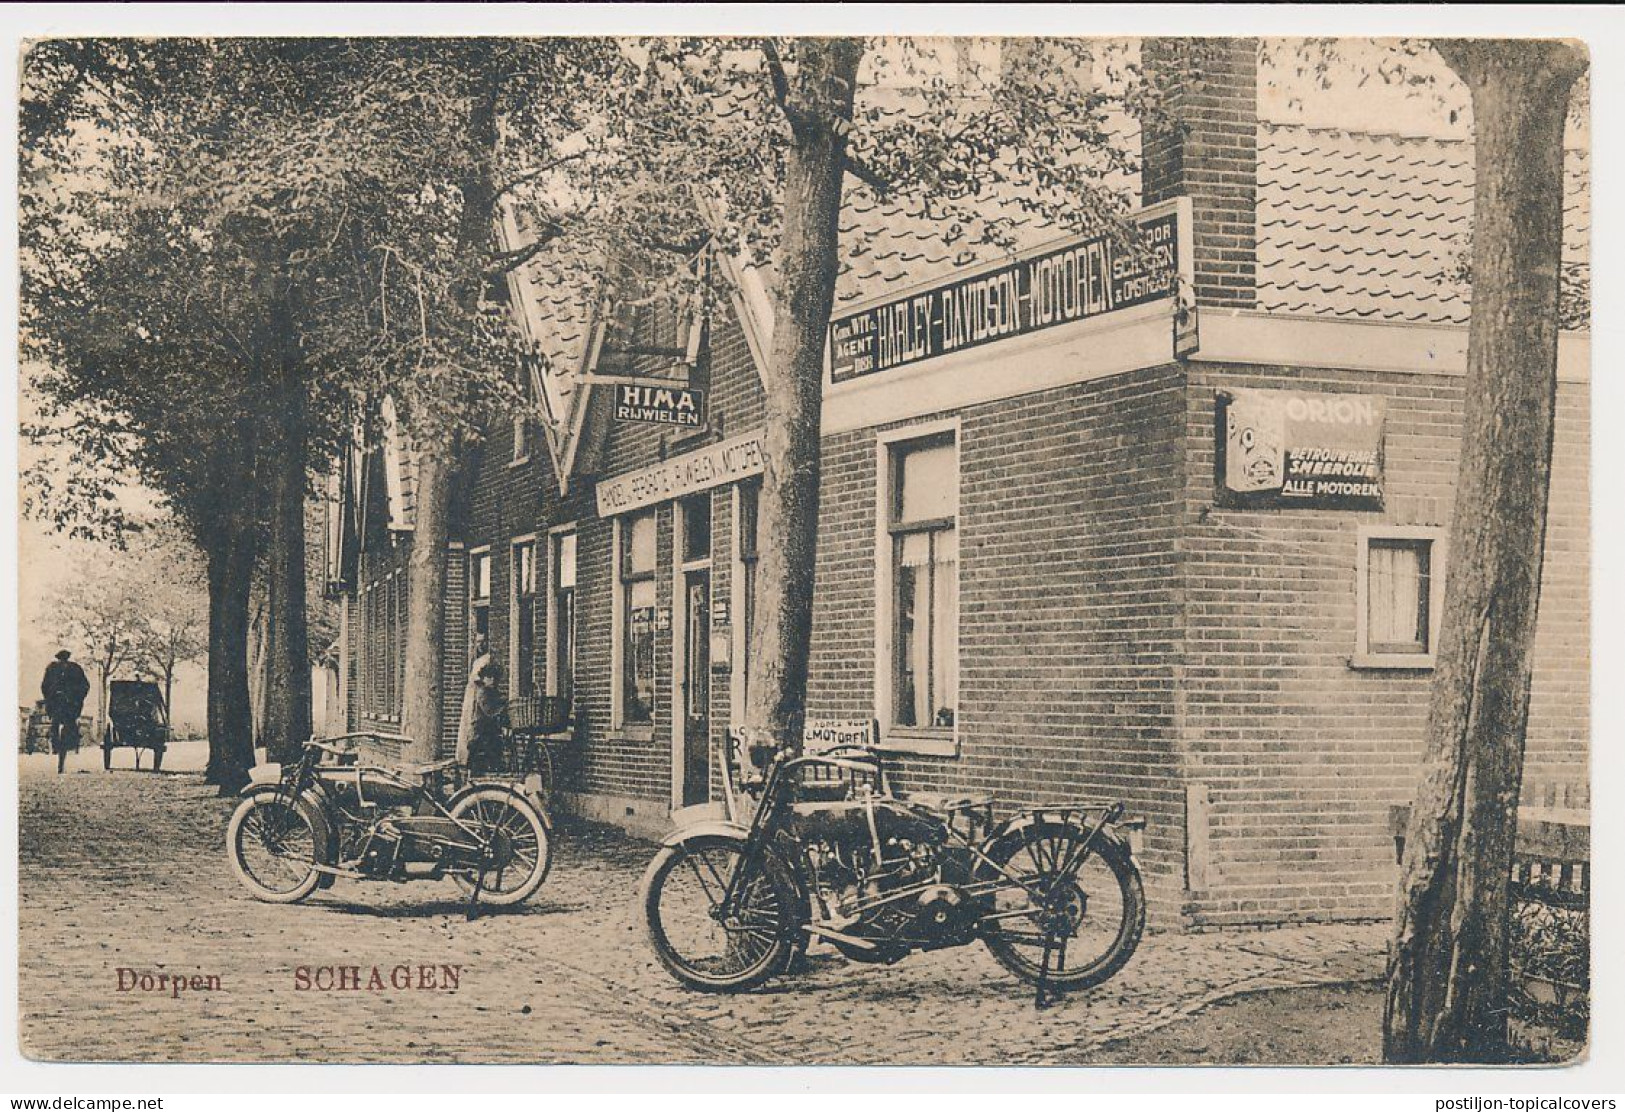 Postcard Schagen The Netherlands 1926 - Harley Davidson Motorcycle Shop - Schagen